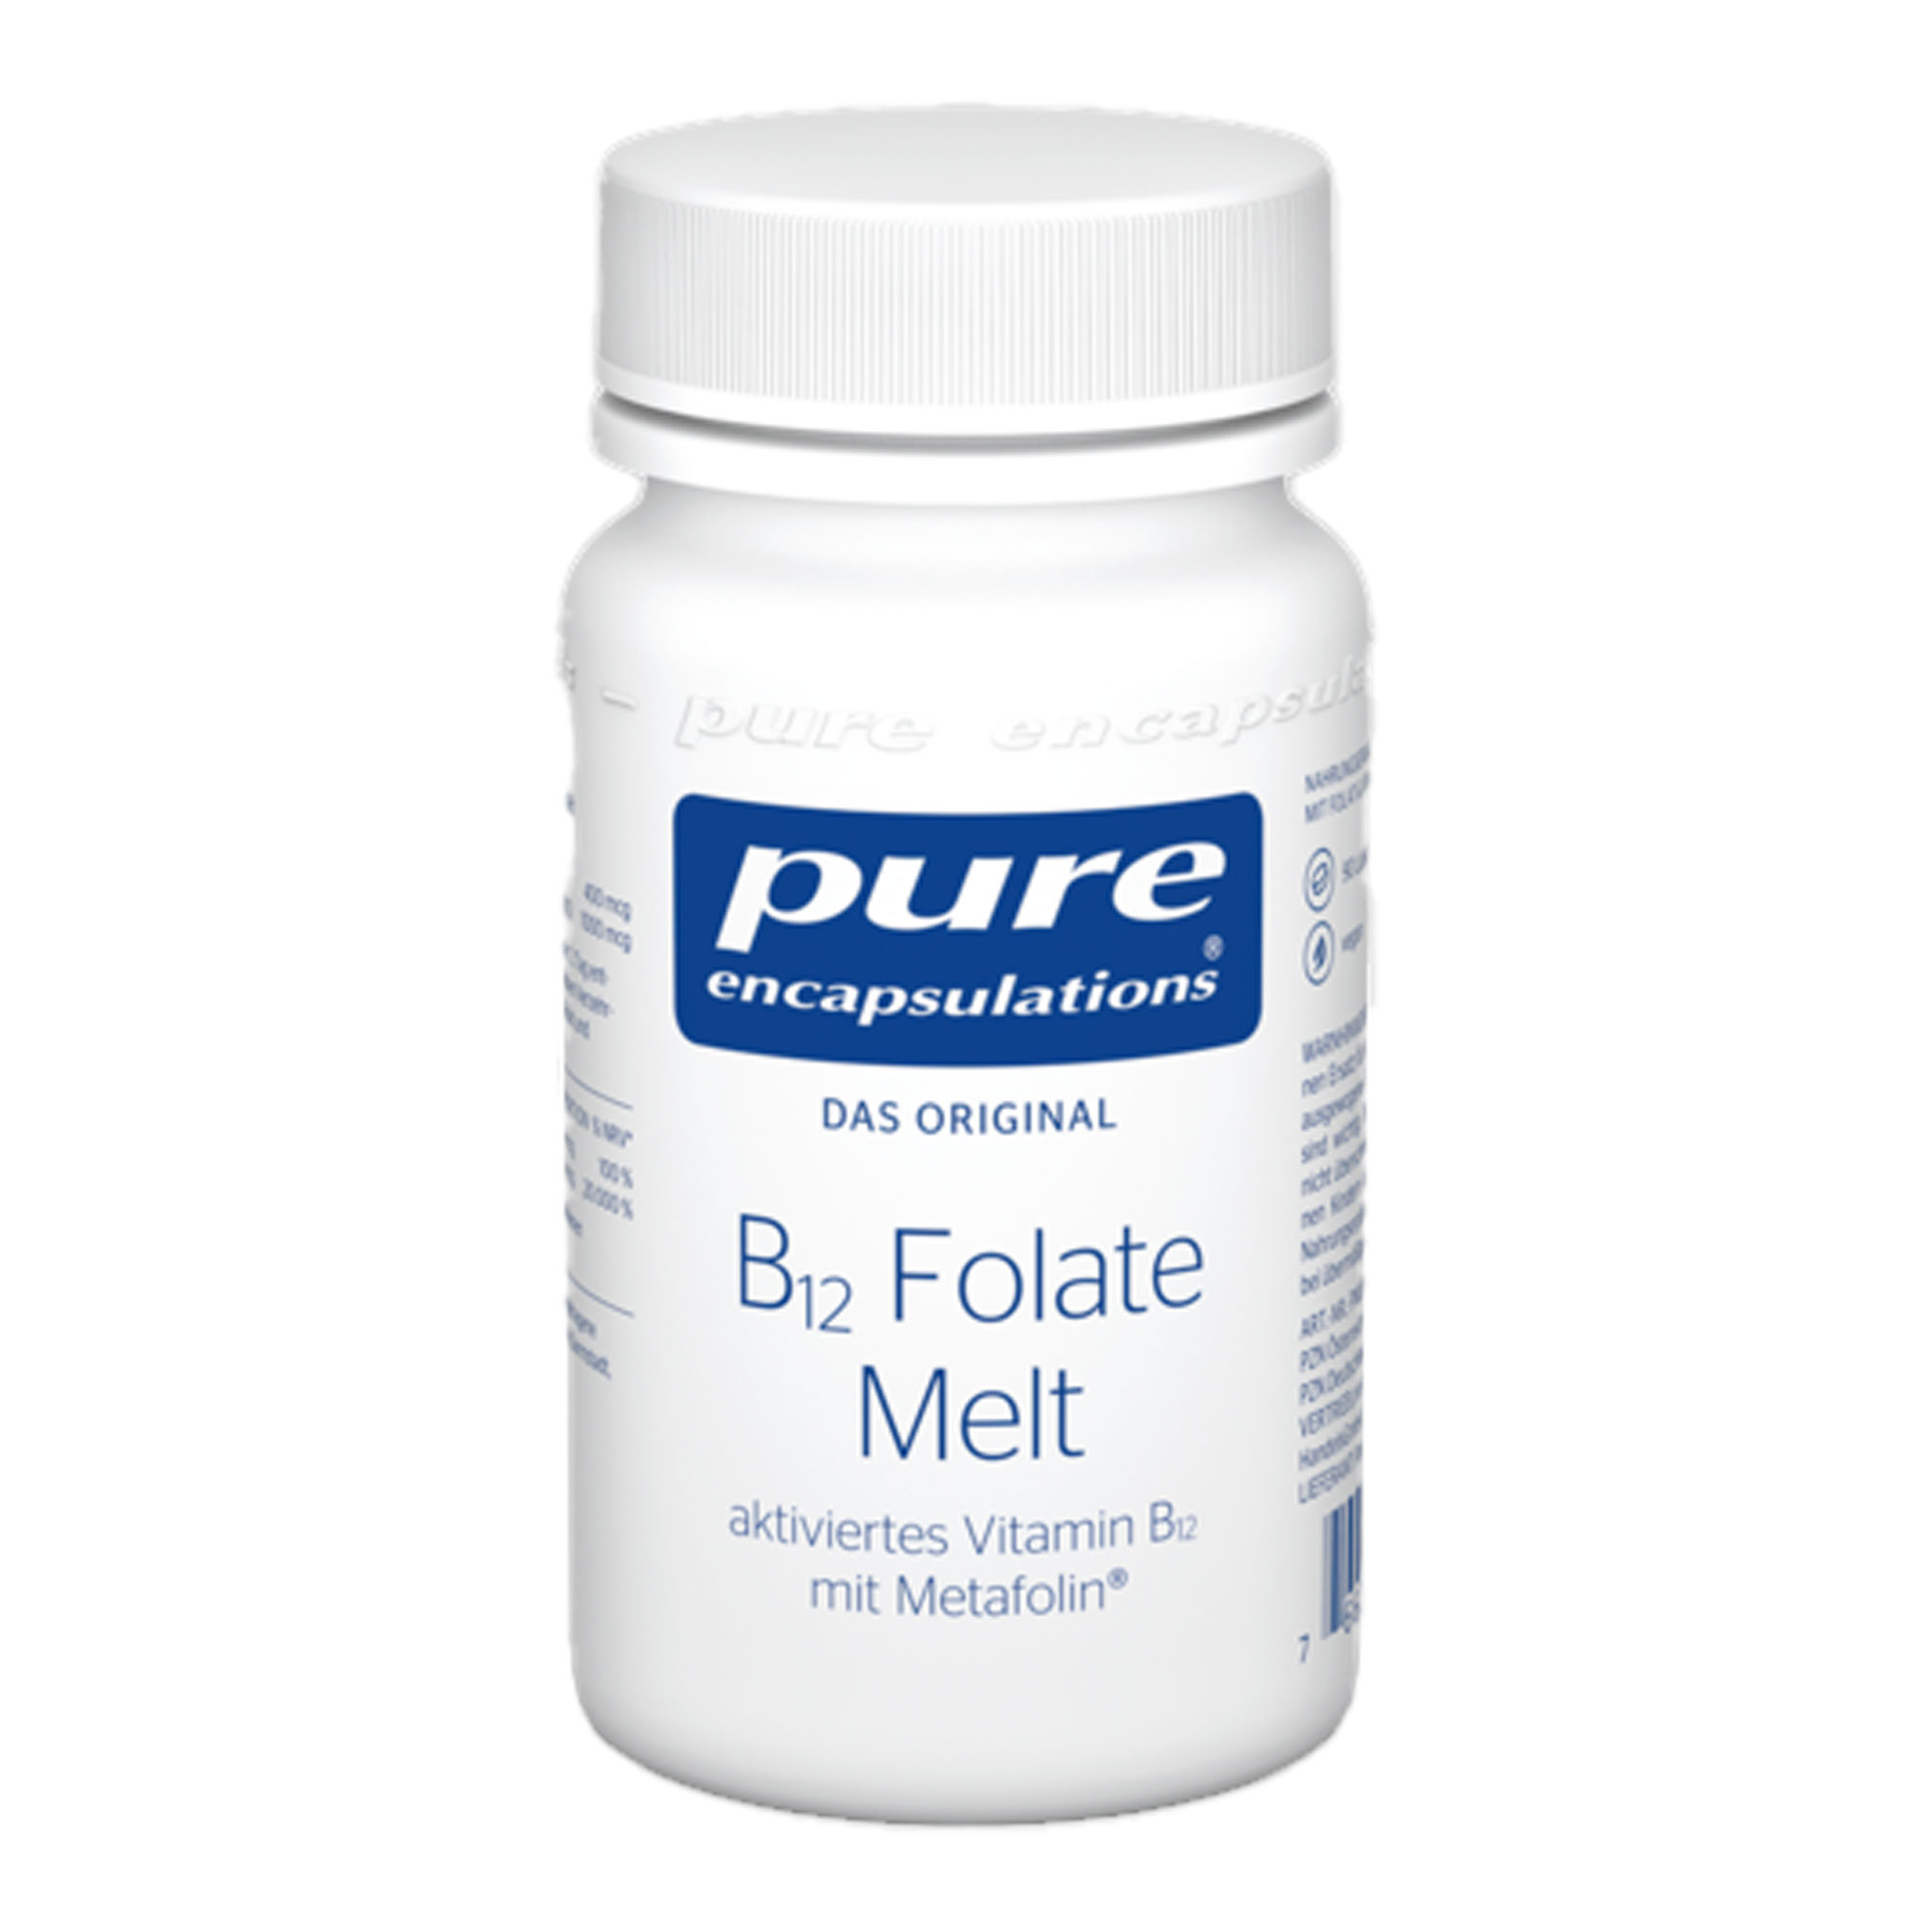 Nahrungsergänzungsmittel mit Vitamin B12 und Folat.